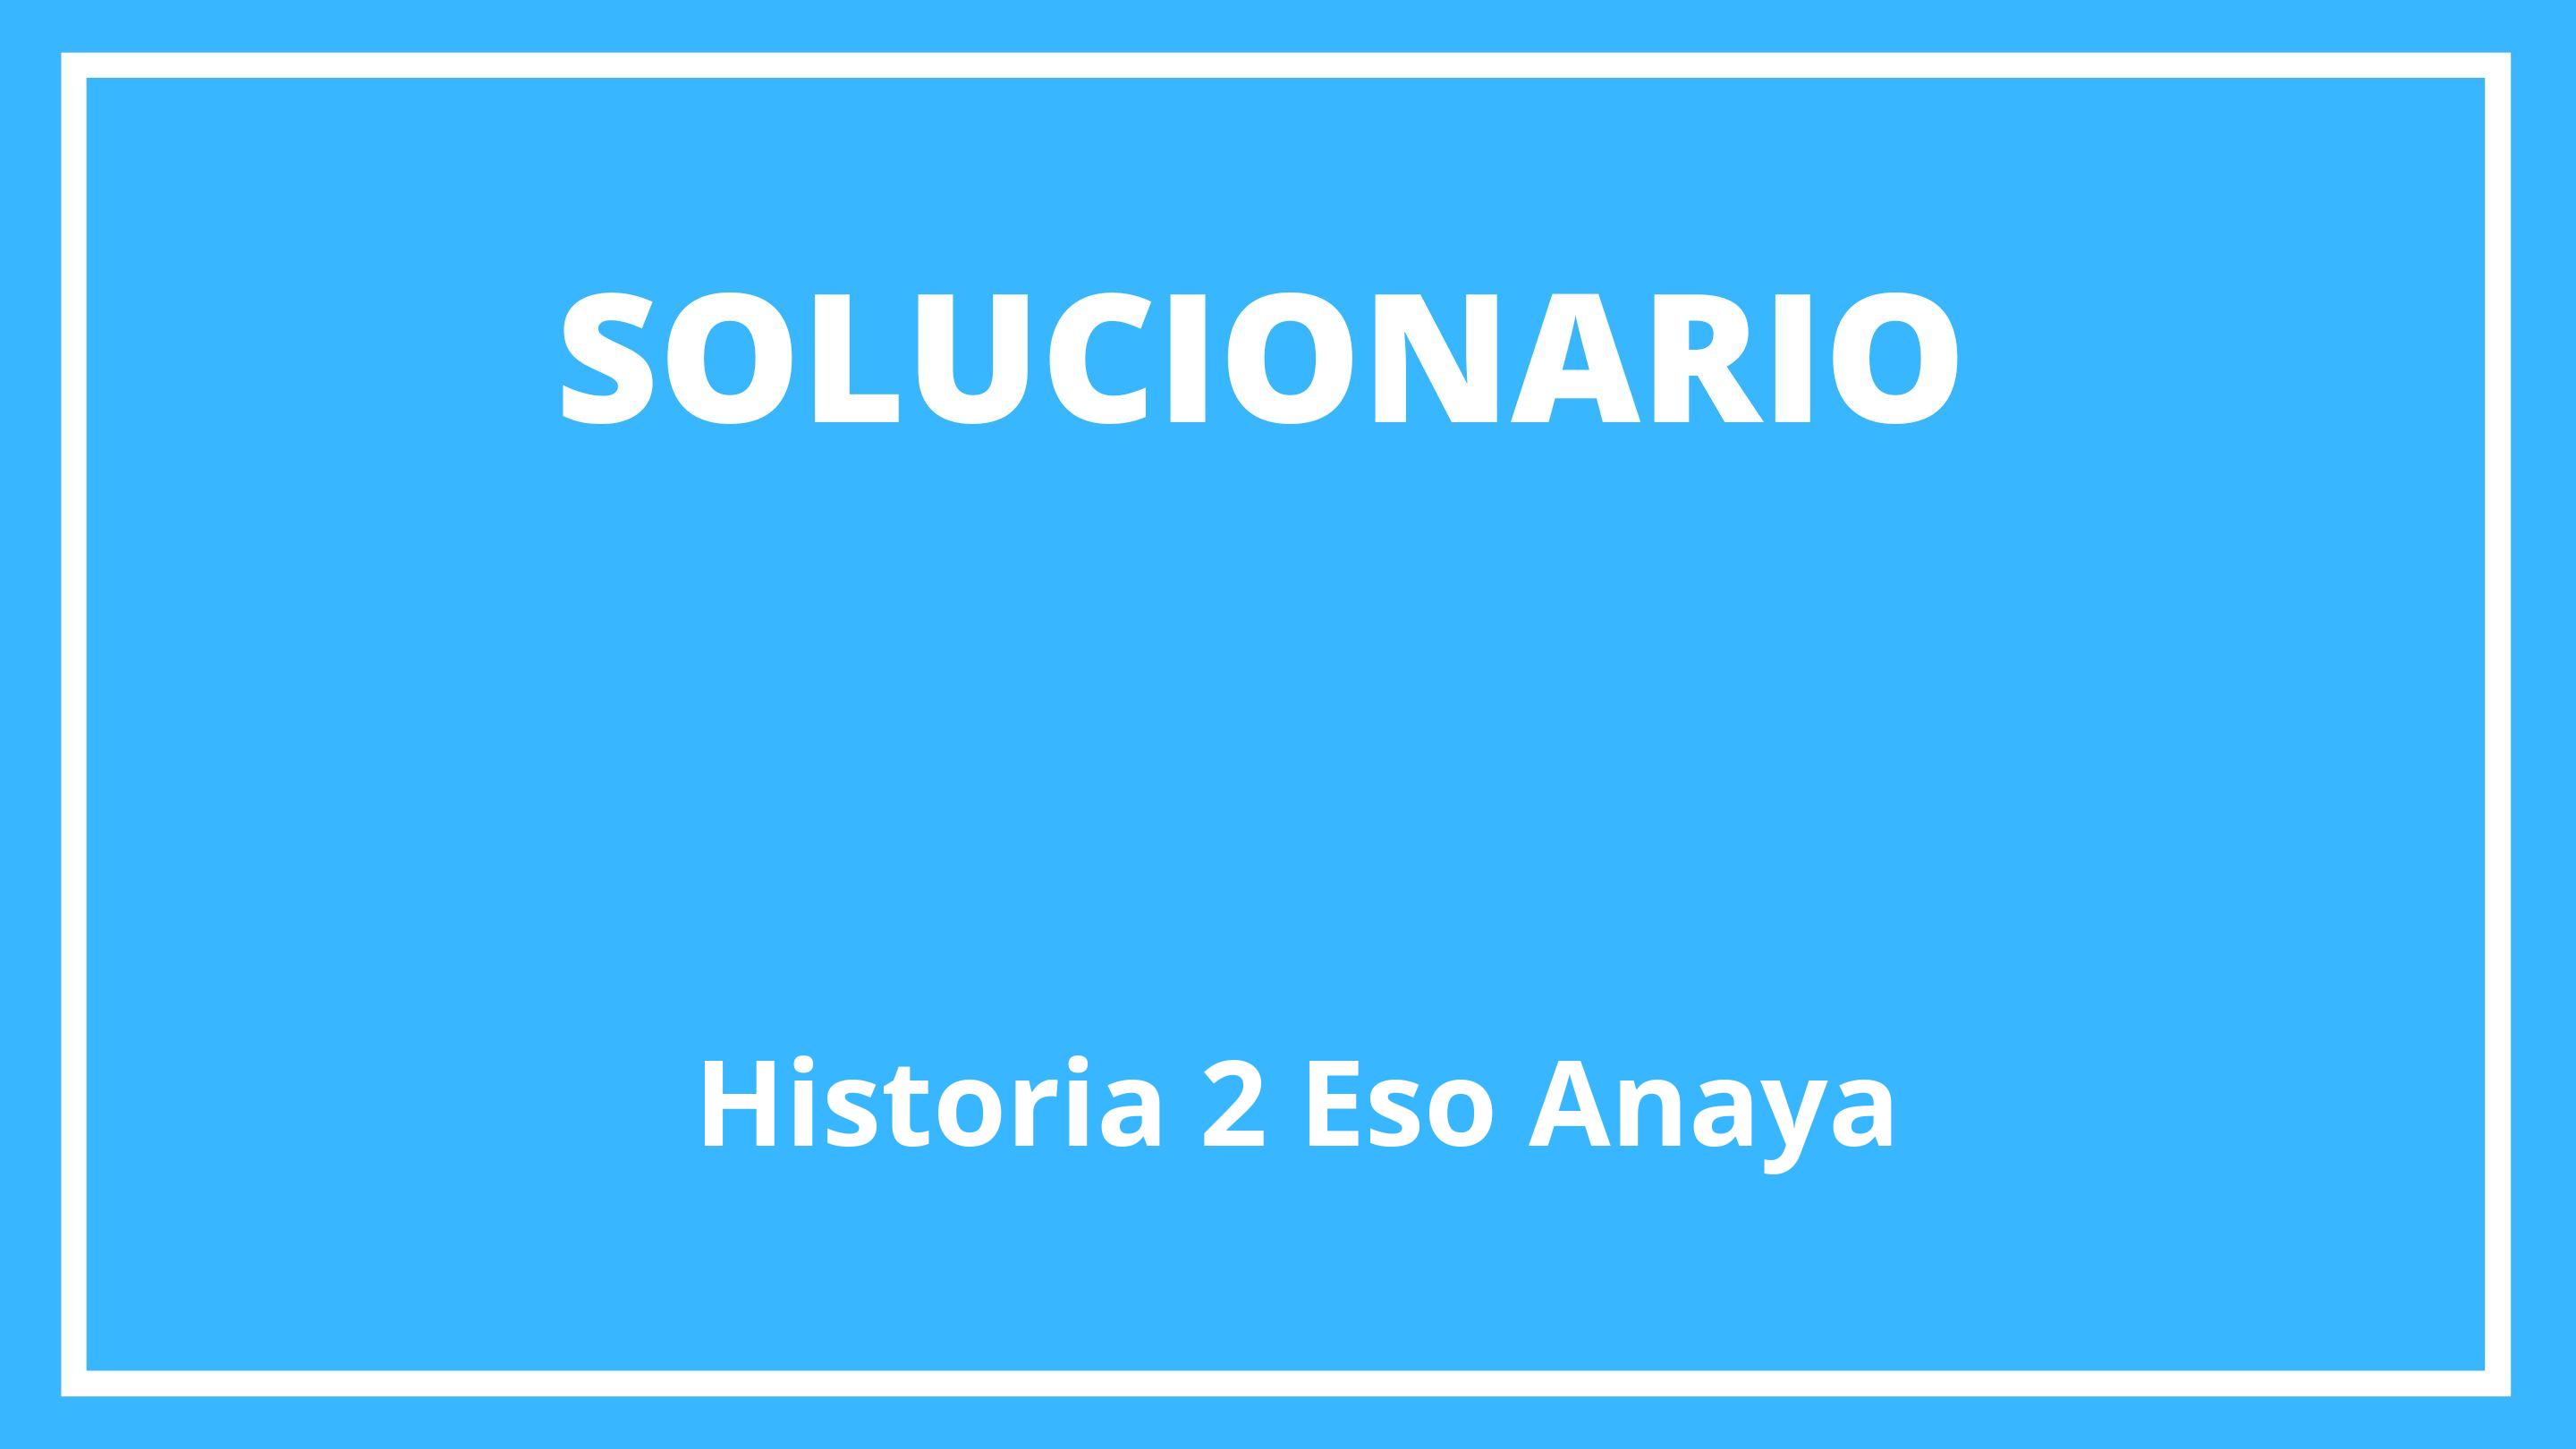 Solucionario Historia 2 Eso Anaya